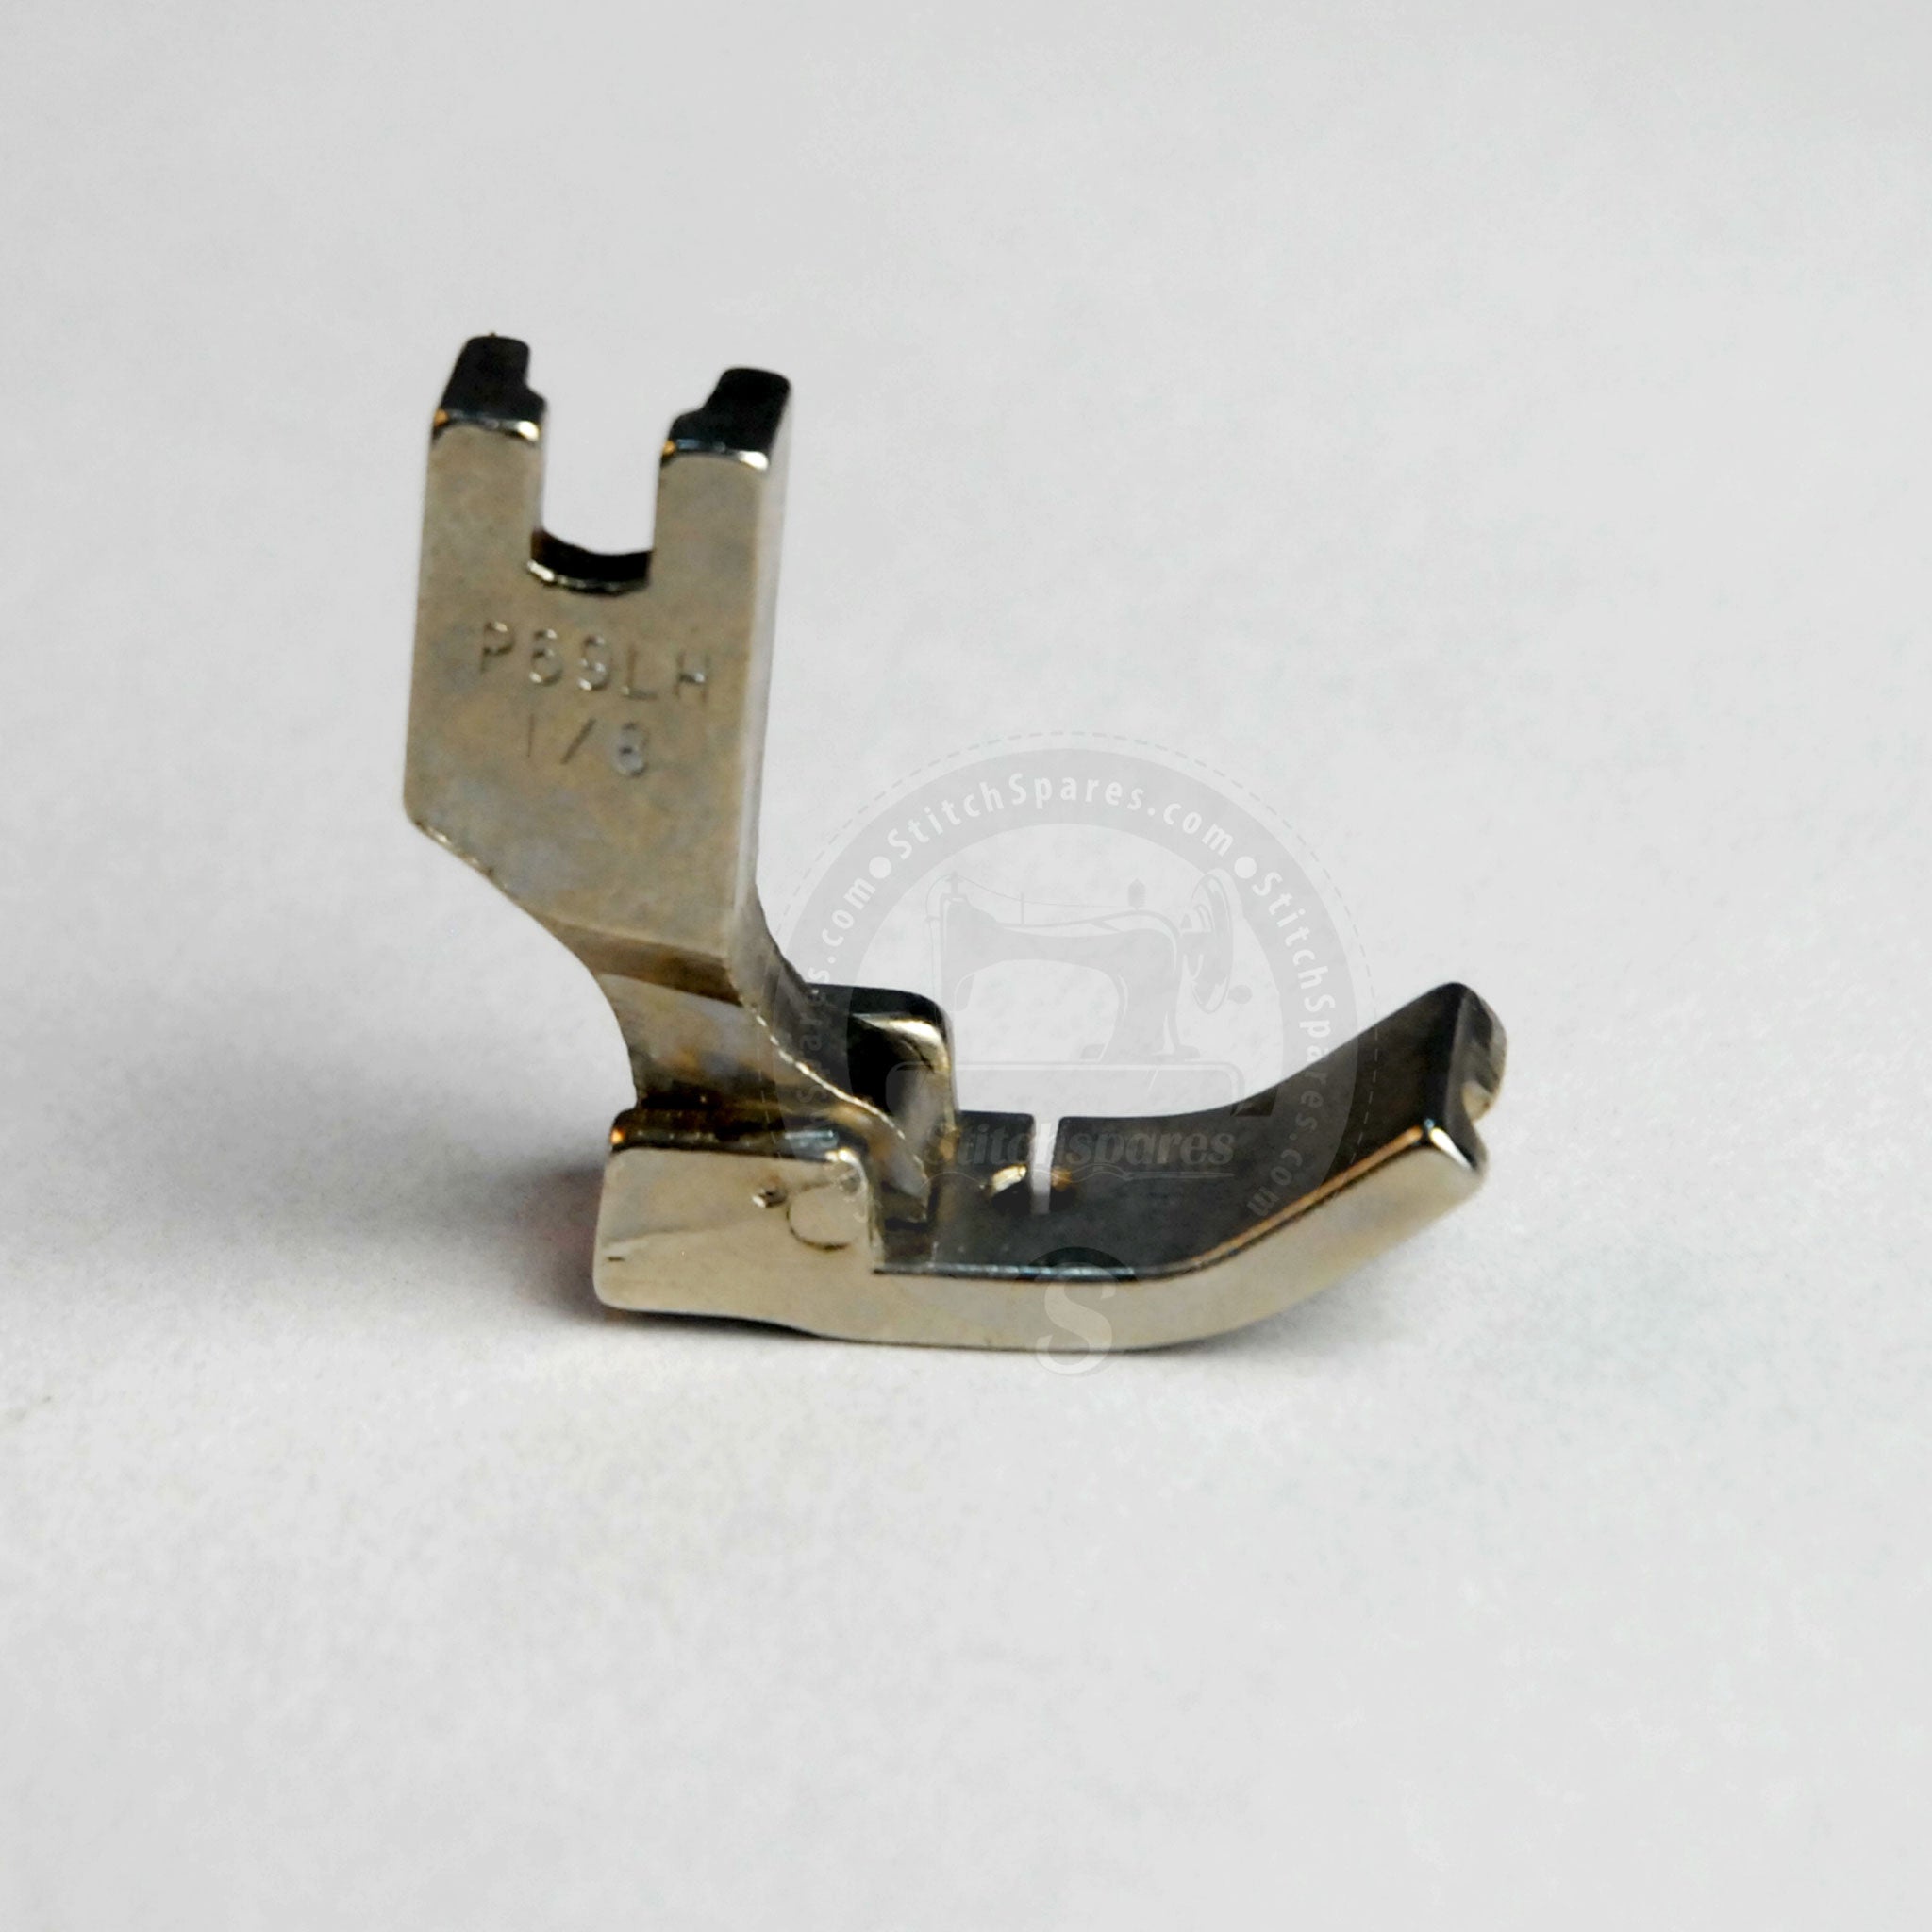 P69LH Prensatelas de 1 a 8 pulgadas Máquina para coser con una sola aguja